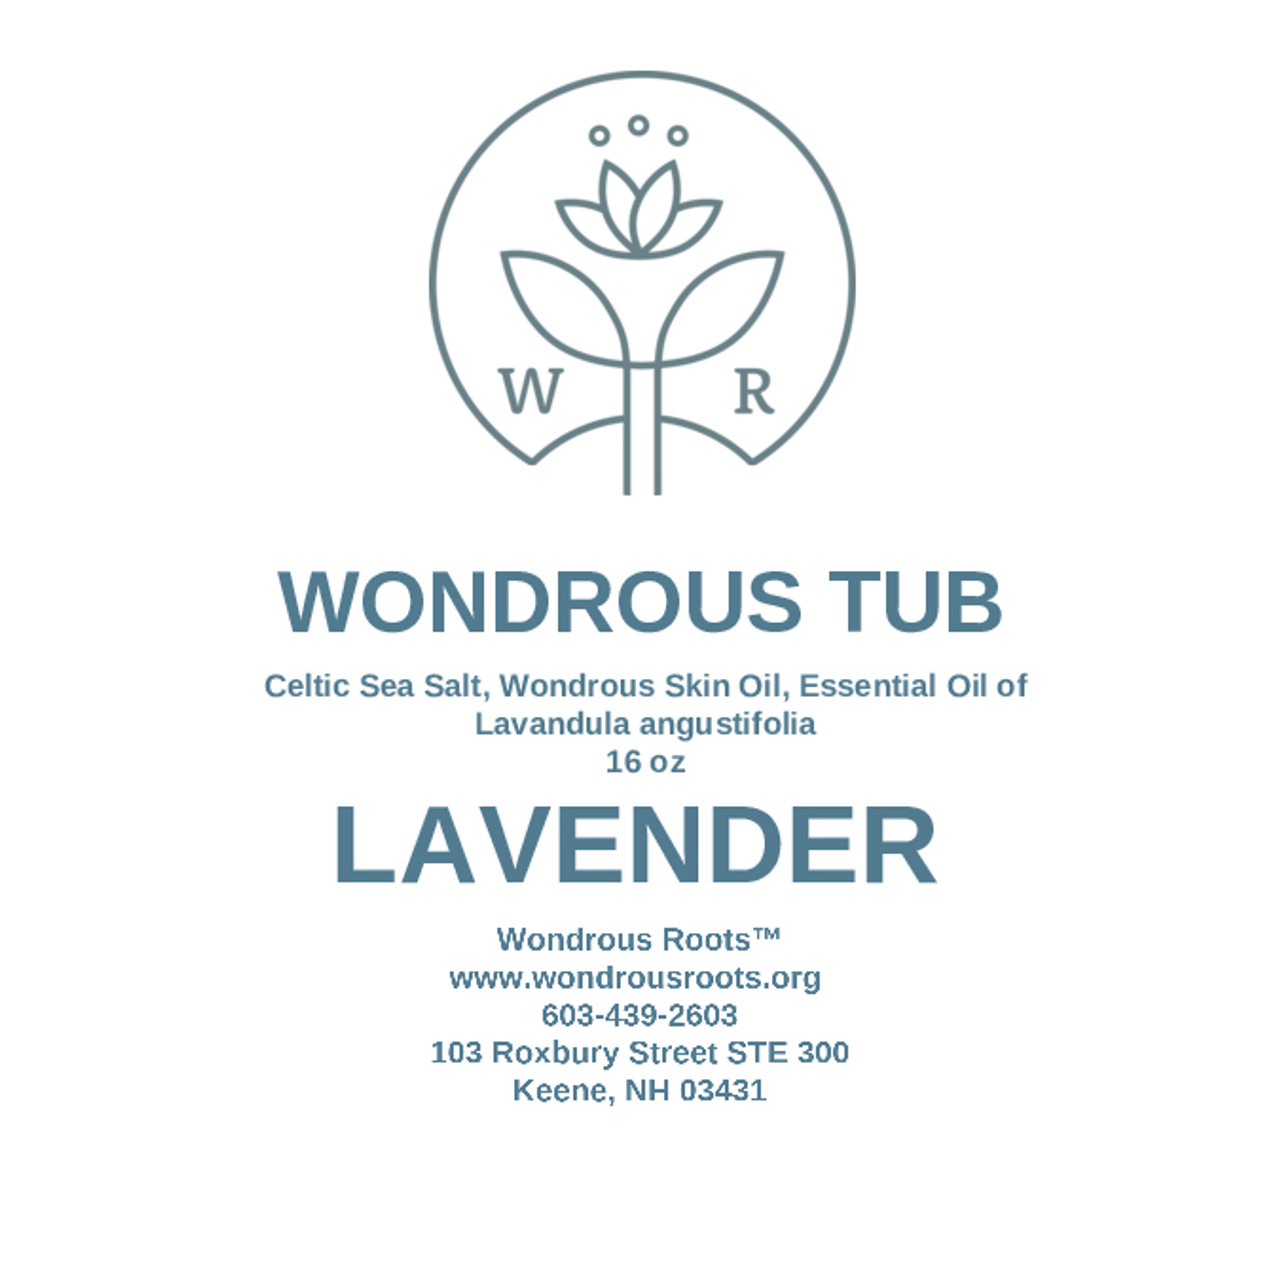 Wondrous Tub